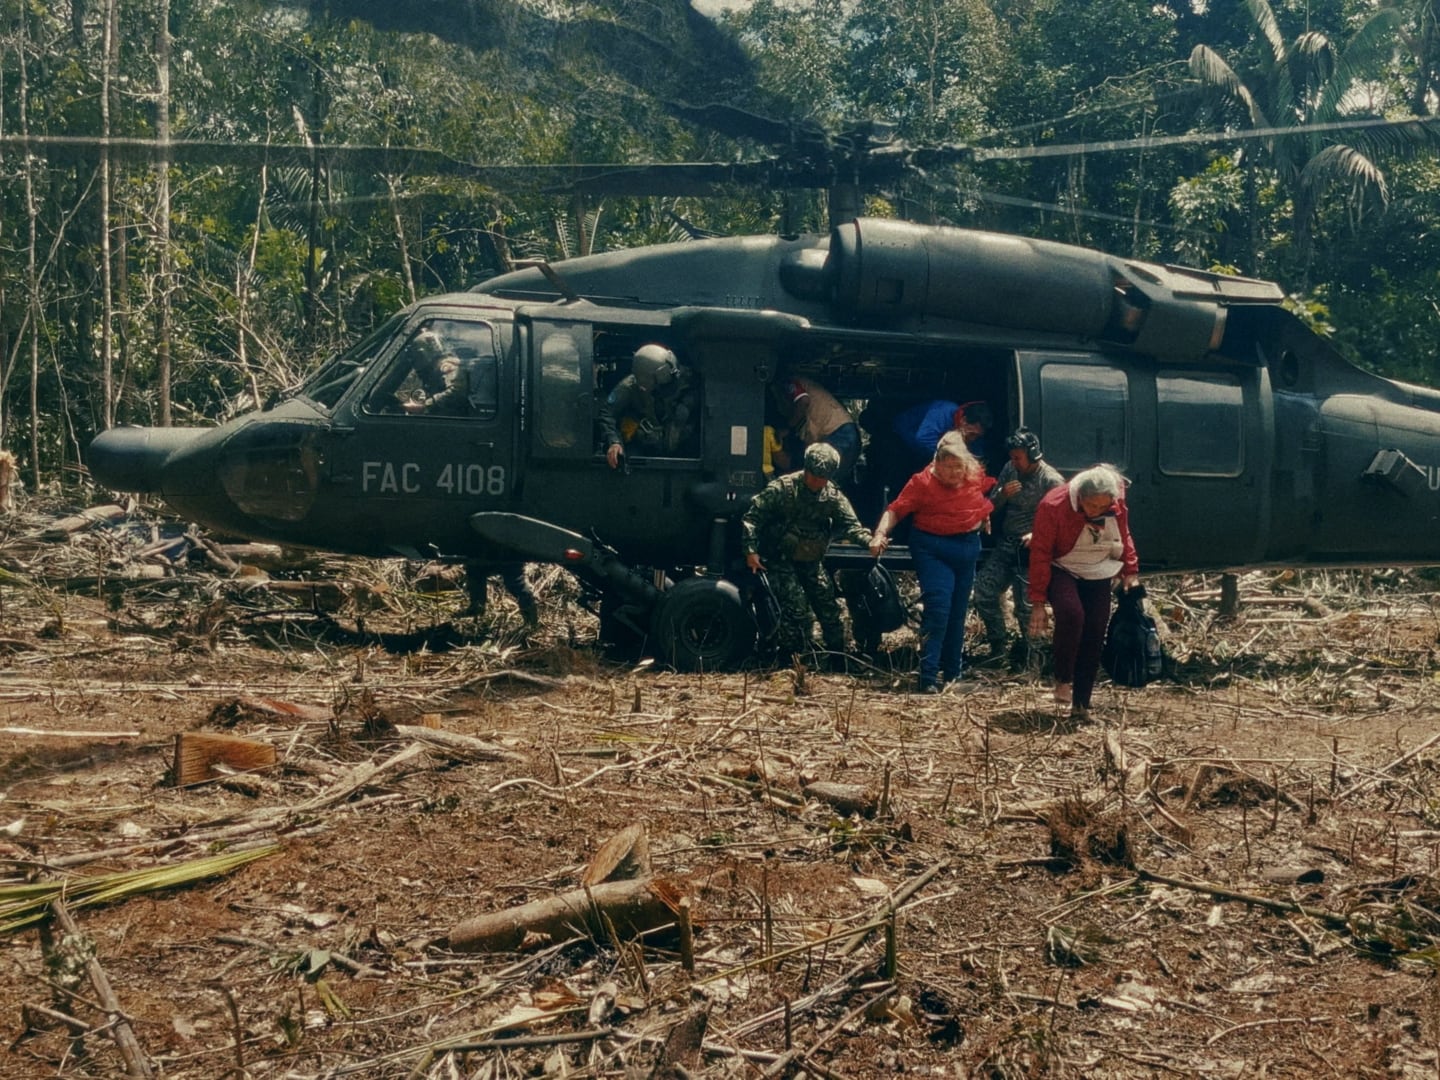 Perdidos en el Amazonas: El Rescate que Conmocionó al Mundo (2024), de Cristina Nieto y Jaime Escallón, se adentra en el rescate de cuatro niños tras estrellarse su avión en la selva.